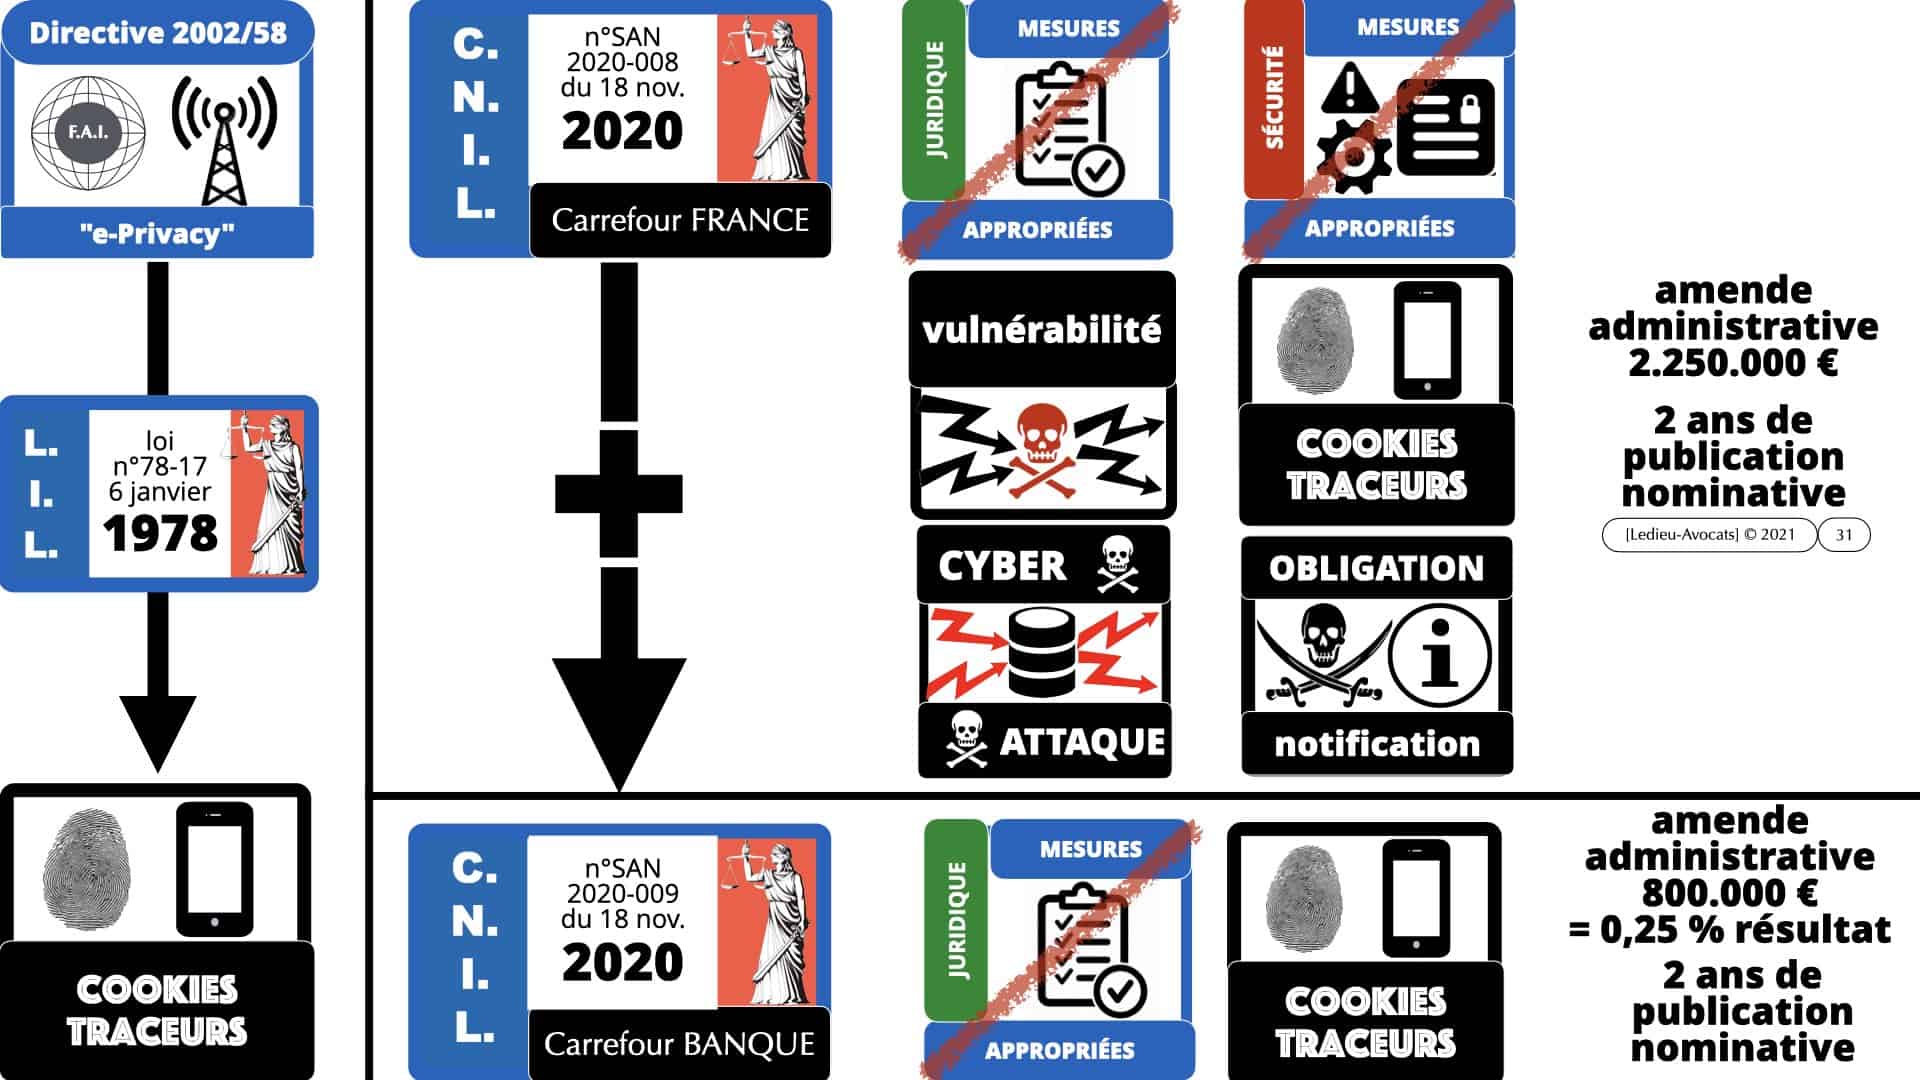 RGPD e-Privacy données personnelles jurisprudence formation Lamy Les Echos 10-02-2021 ©Ledieu-Avocats.019